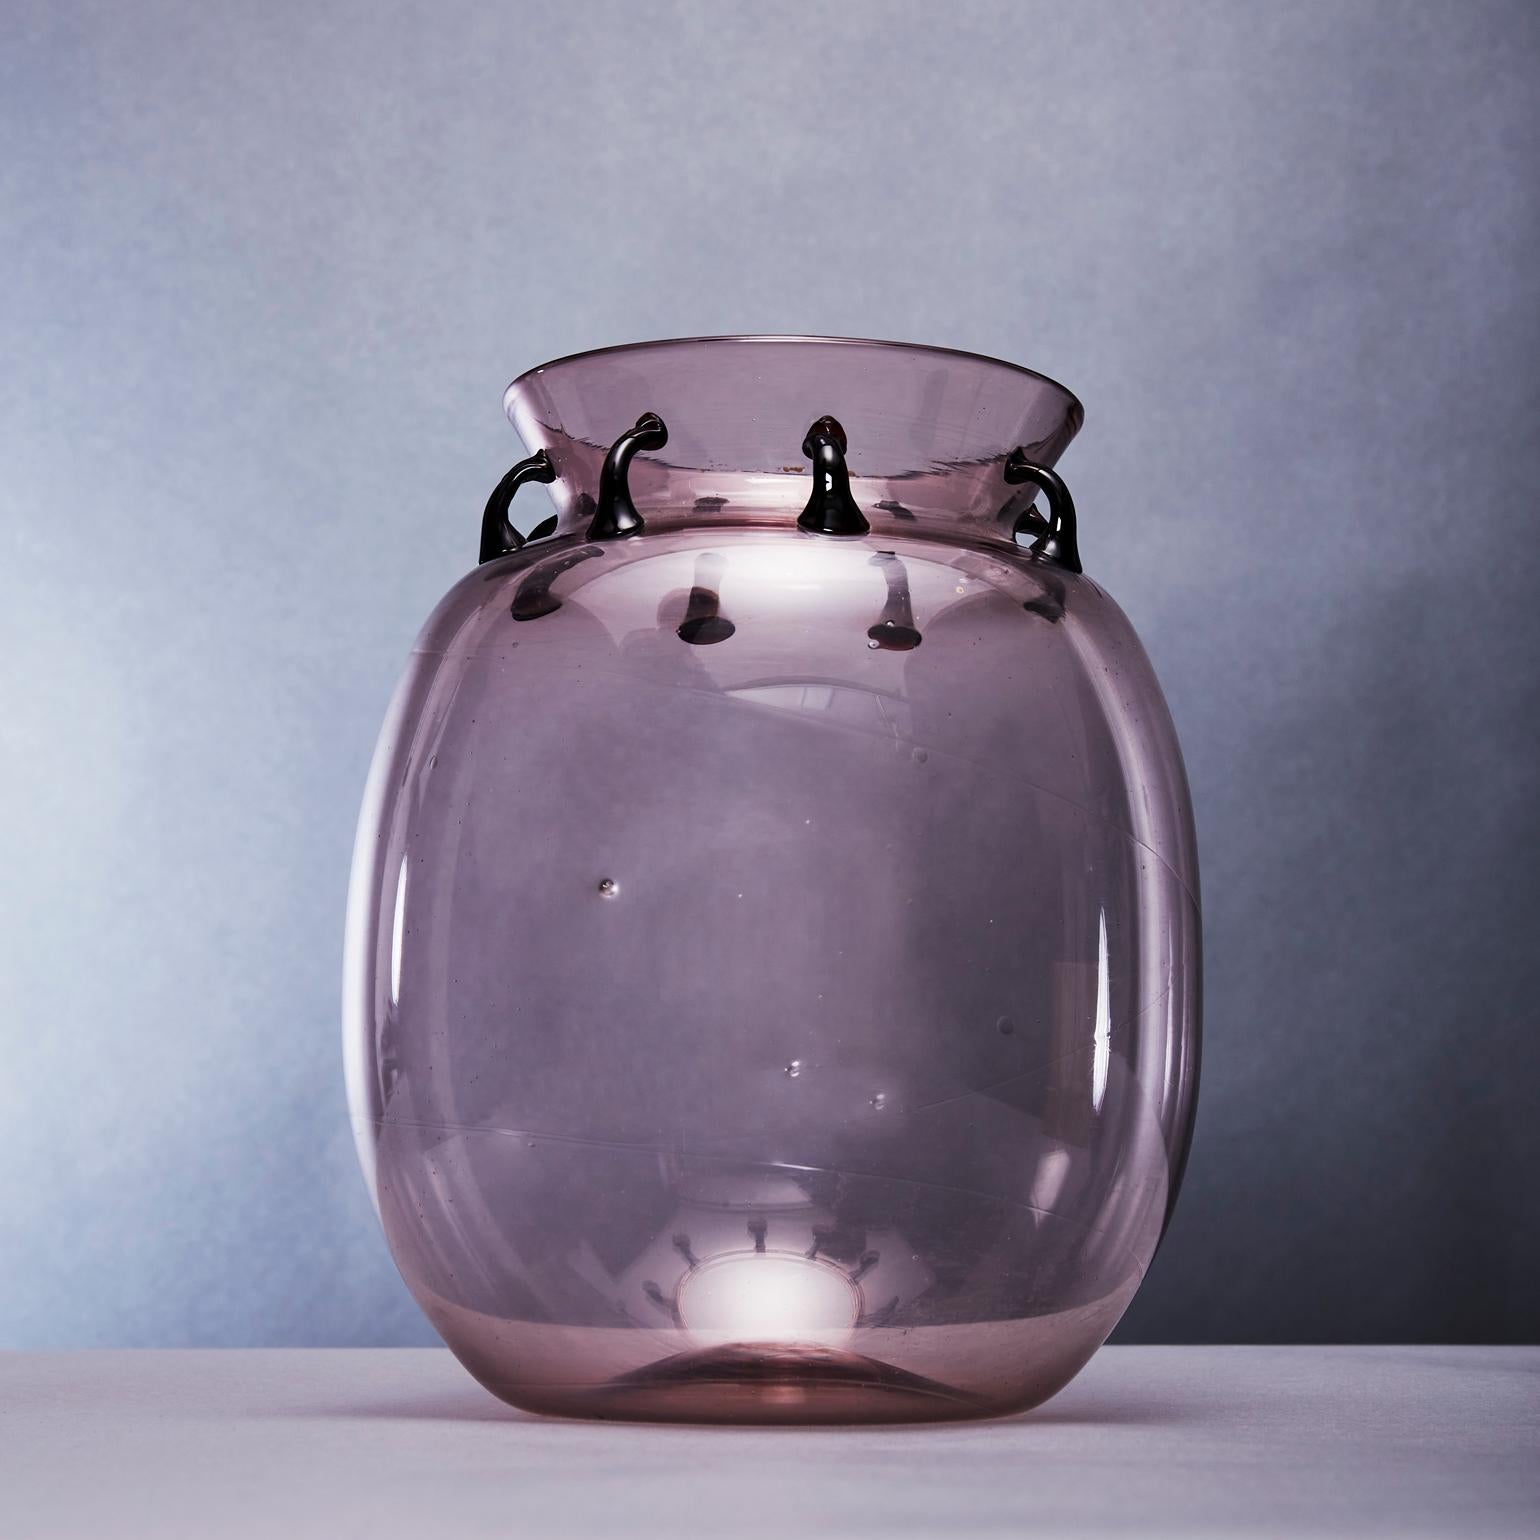 Schillernde, bauchige Vase aus SoffiatoModell Nr. 1416, mit mehreren aufgesetzten Henkeln in der Nähe und um die Öffnung der geriffelten Vasenmündung. Eine Technik, bei der das fein mundgeblasene Gefäß eine dünne Wand aus amethystfarbenem Glas